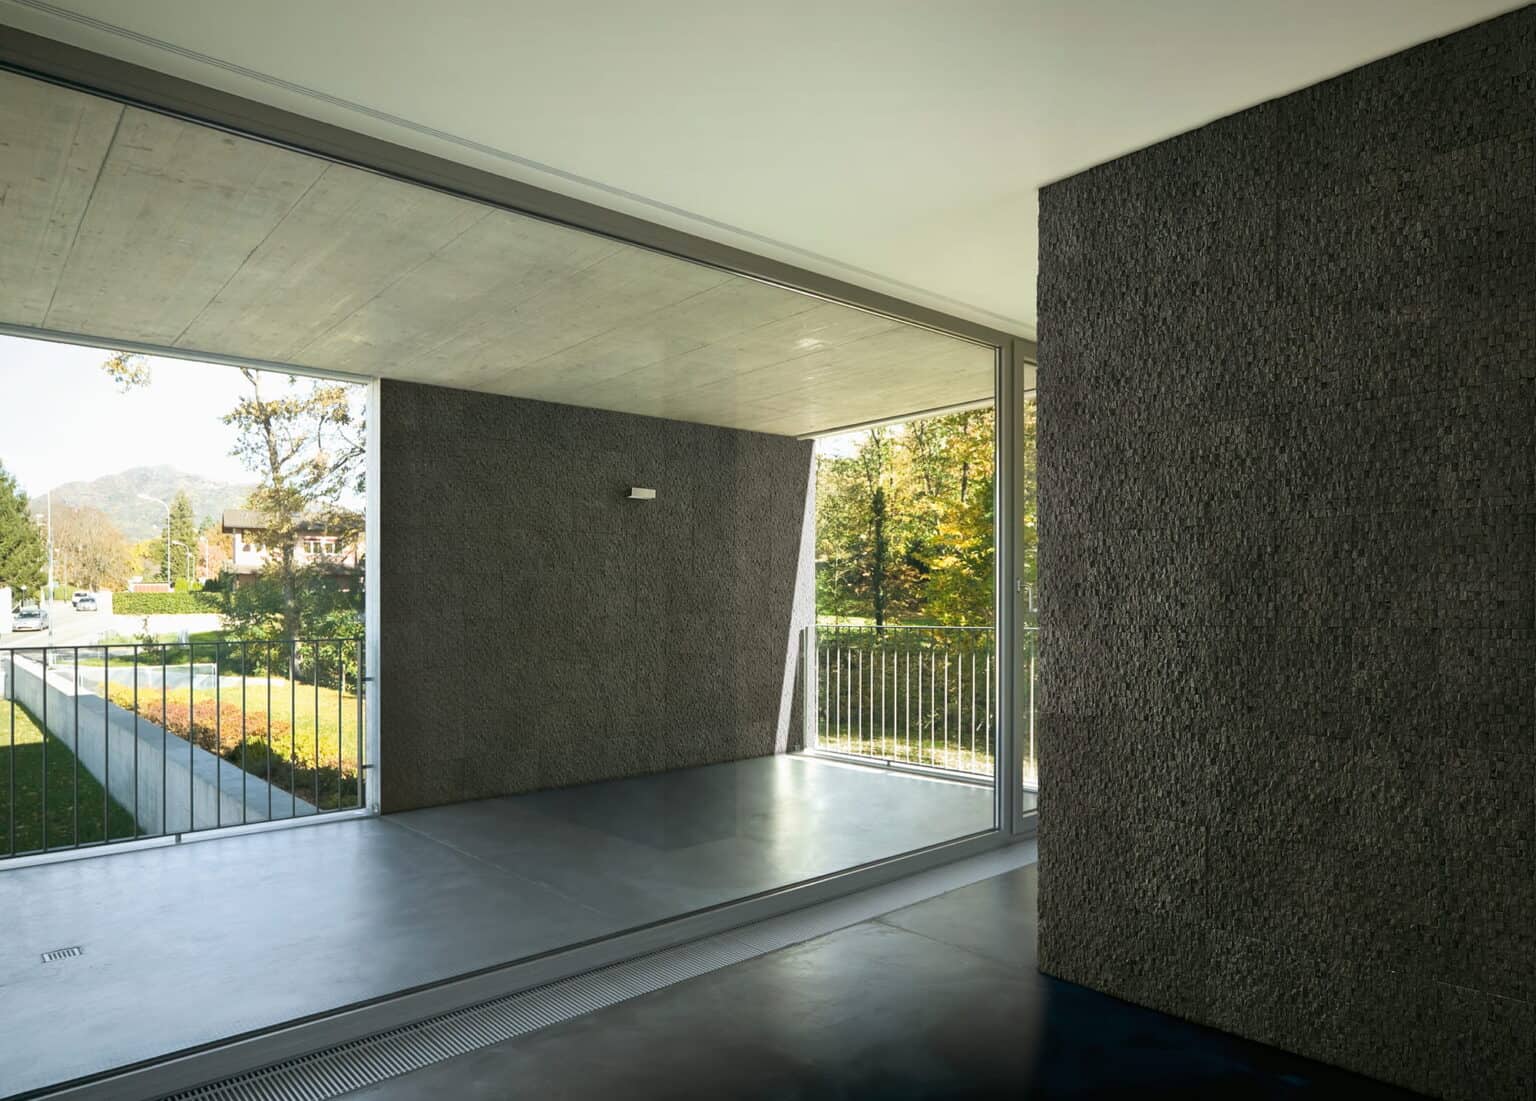 Decorative Concrete Pavers – CUBUS Collection